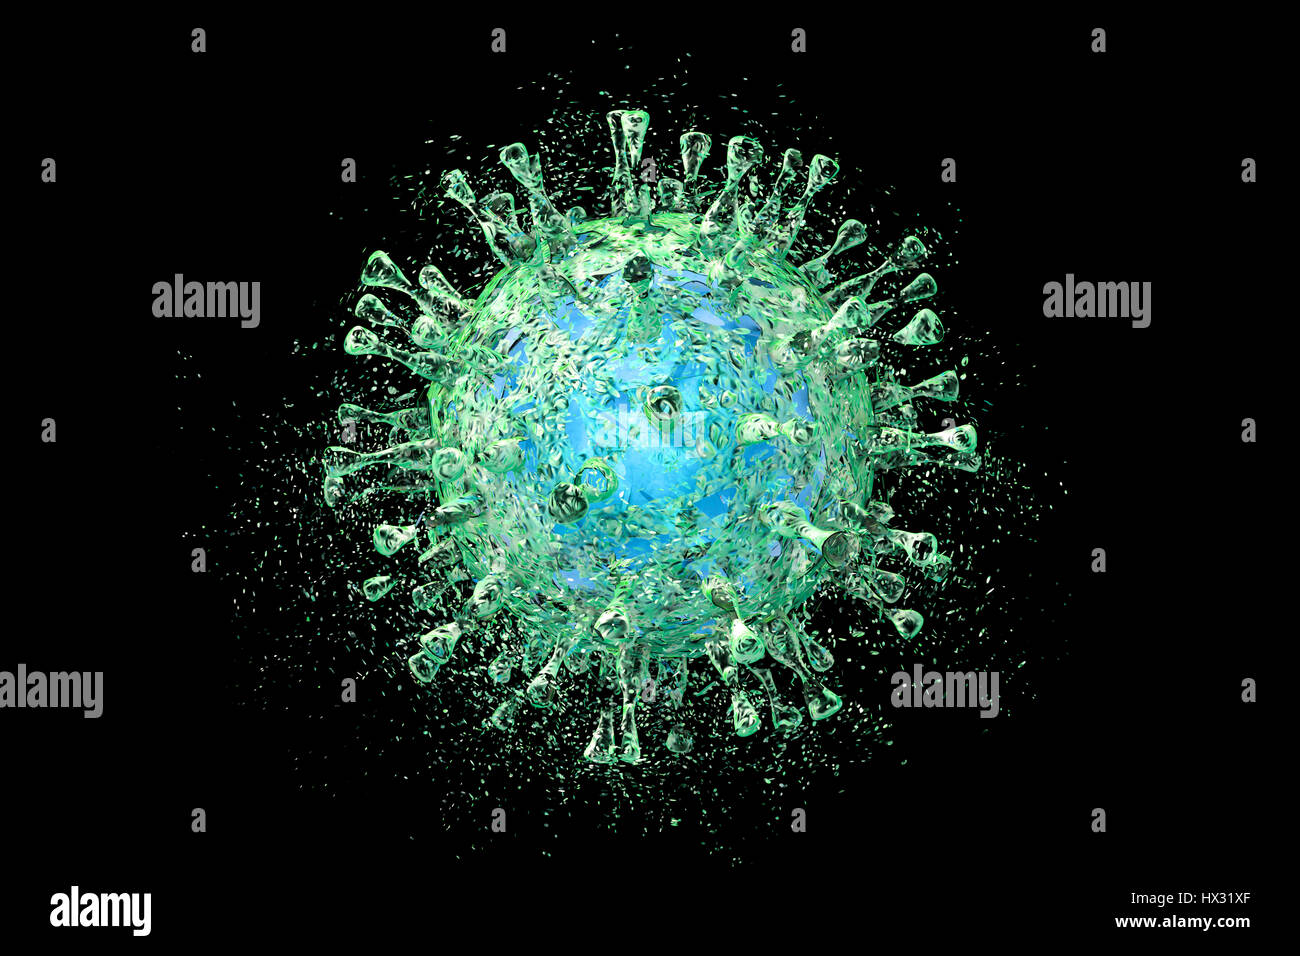 La destruction du cytomégalovirus humain (CMVH), illustration de l'ordinateur. Image conceptuelle pour l'infection par le CMVH Traitement et prévention. Le CMVH est membre de la famille des Herpesviridae. Il a un très haut taux d'infection et est l'une des principales causes de maladie dans les nouveau-nés vulnérables et les patients immunodéprimés, mais n'a pas l'habitude de causer la maladie chez les adultes en bonne santé. Banque D'Images